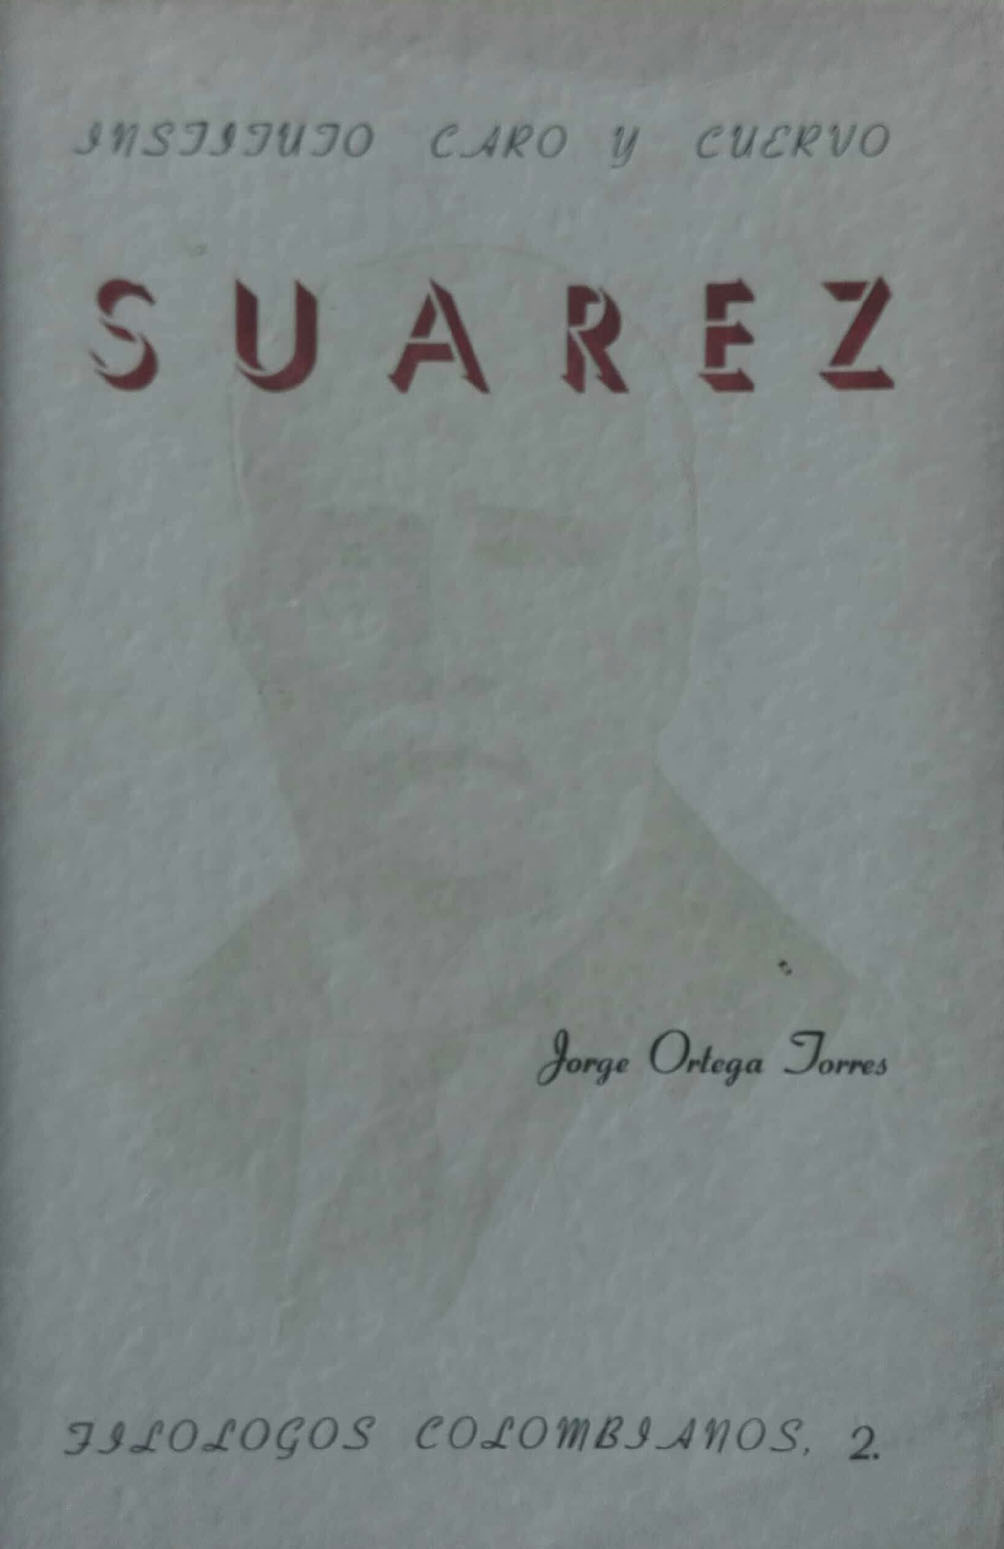 Marco Fidel Suárez